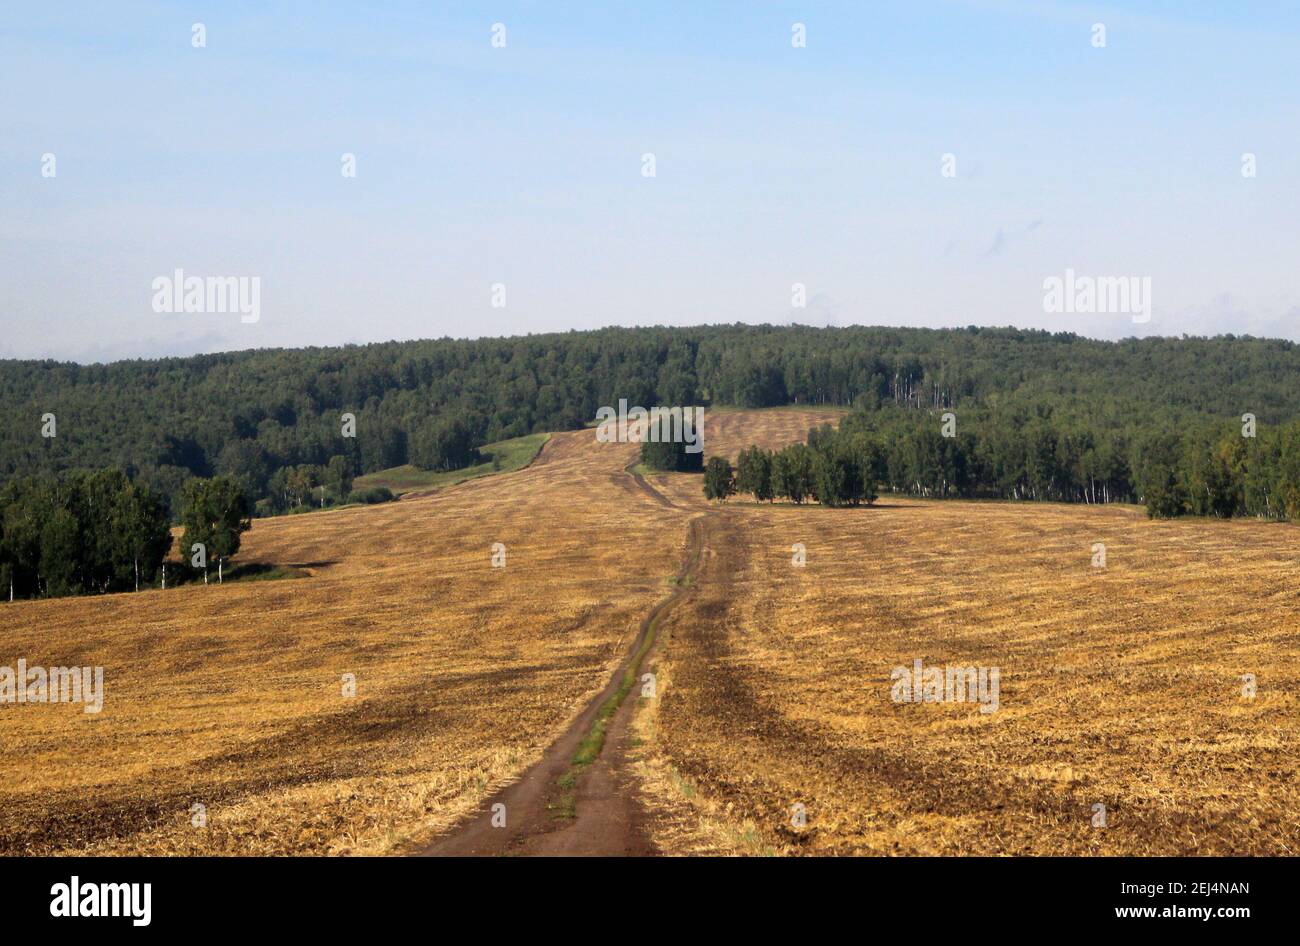 Una strada sterrata attraversa un campo giallo e si perde nel verde delle corone degli alberi. Paesaggio autunnale. Foto Stock